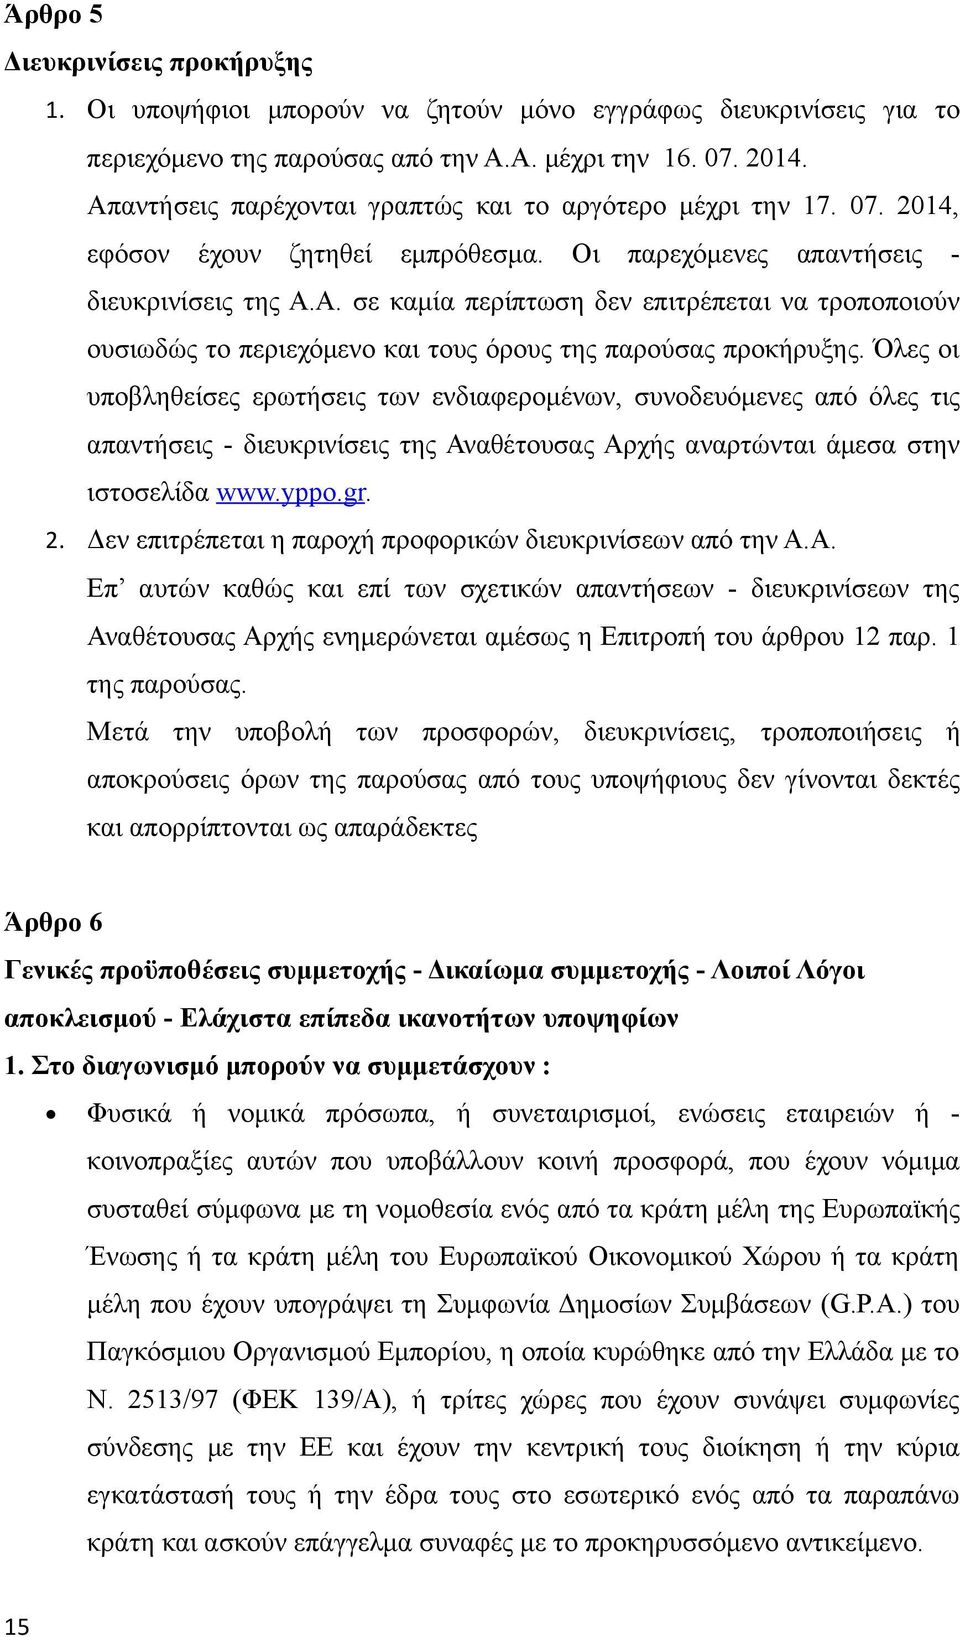 Όλες οι υποβληθείσες ερωτήσεις των ενδιαφερομένων, συνοδευόμενες από όλες τις απαντήσεις - διευκρινίσεις της Αναθέτουσας Αρχής αναρτώνται άμεσα στην ιστοσελίδα www.yppo.gr. 2.